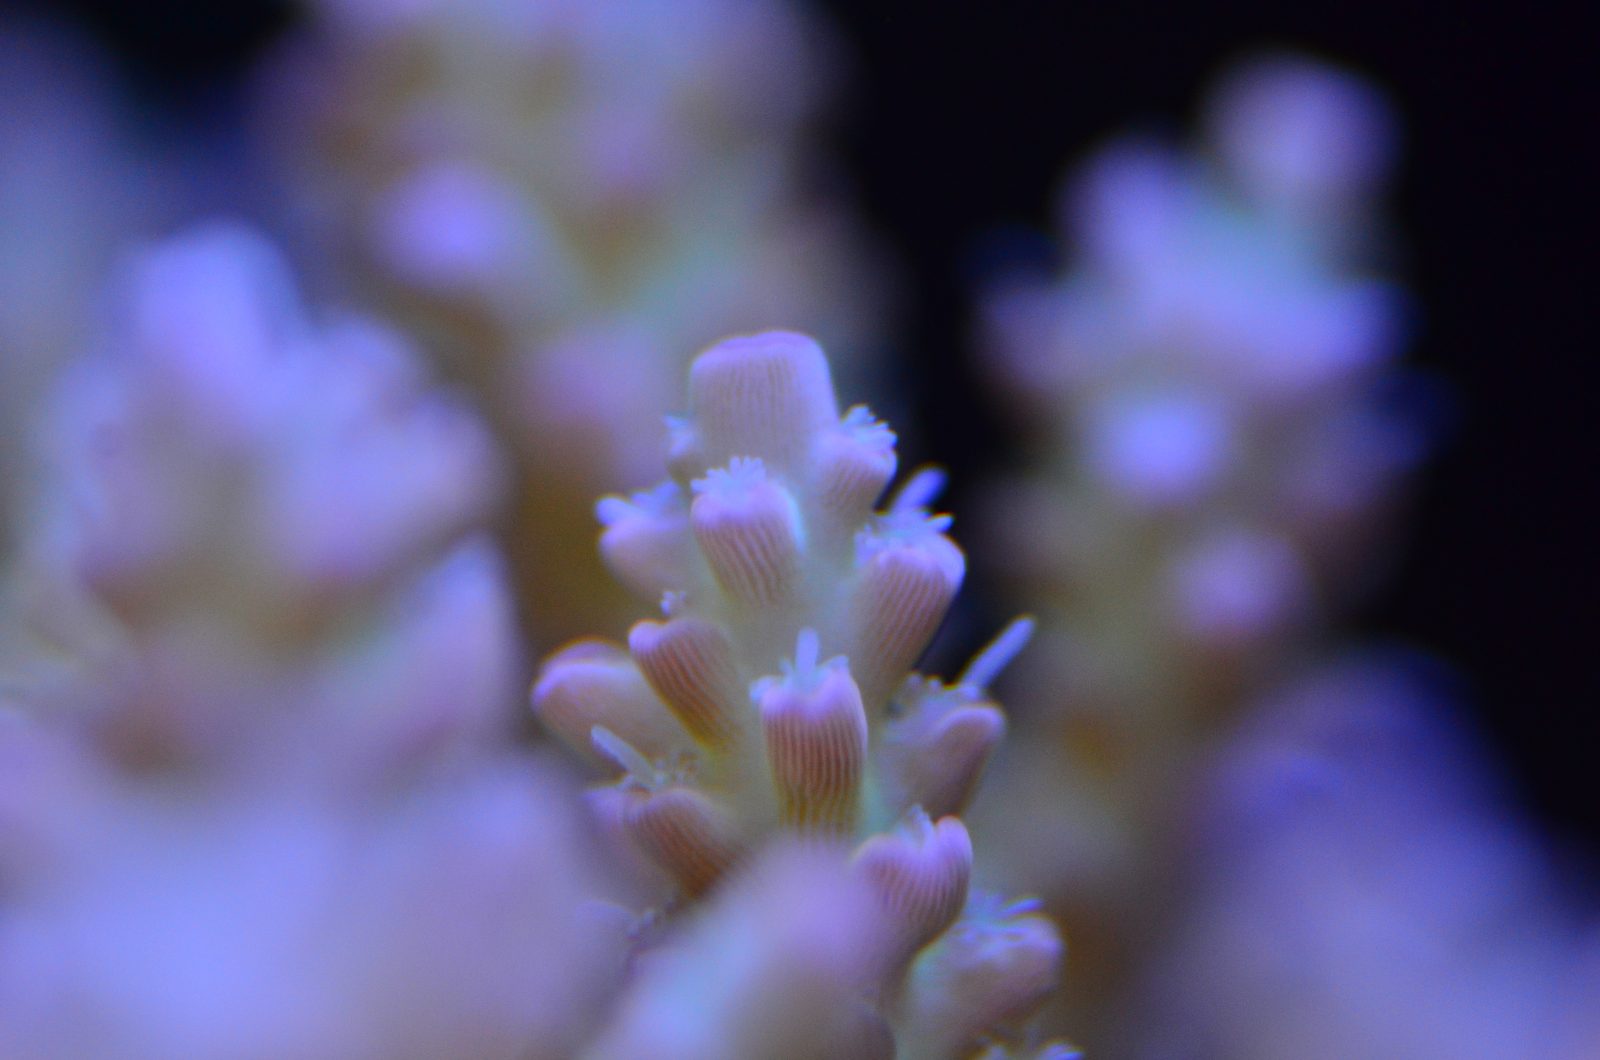 høj kvalitet rev koraller belysning